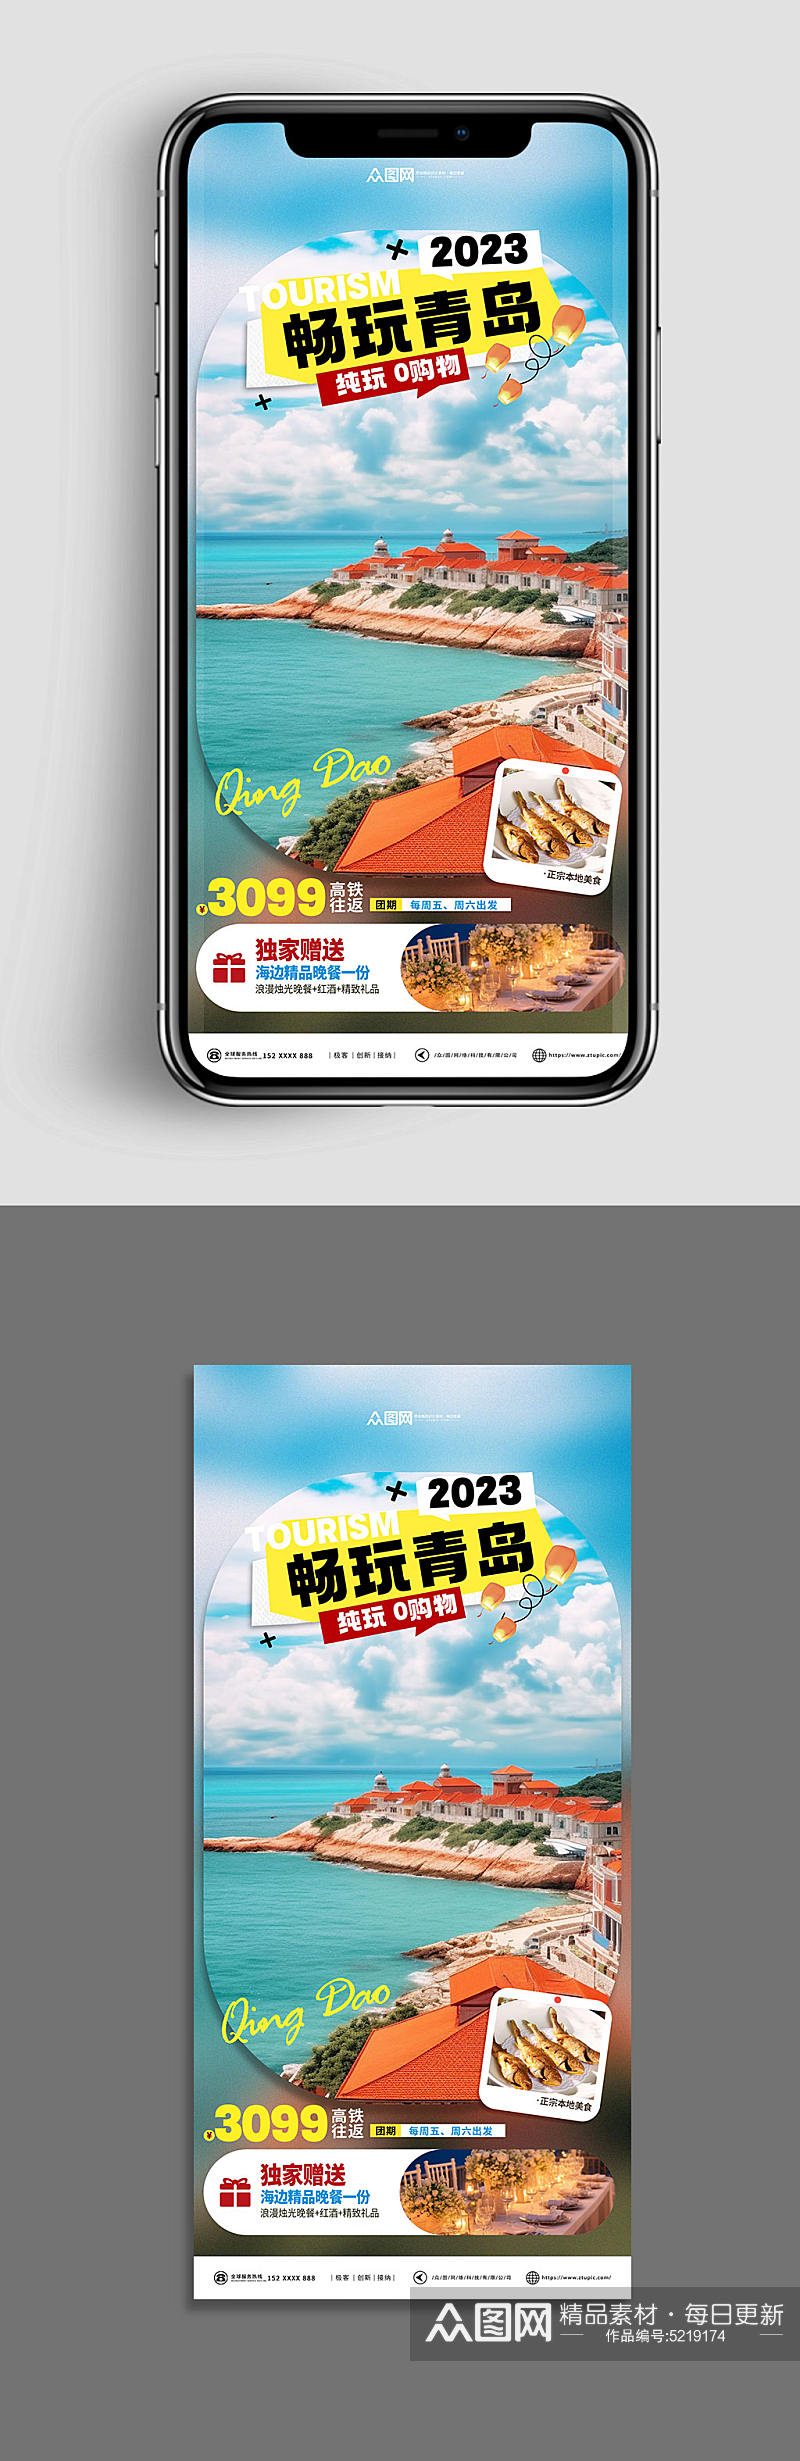 十一出行国庆旅行社旅游宣传海报素材